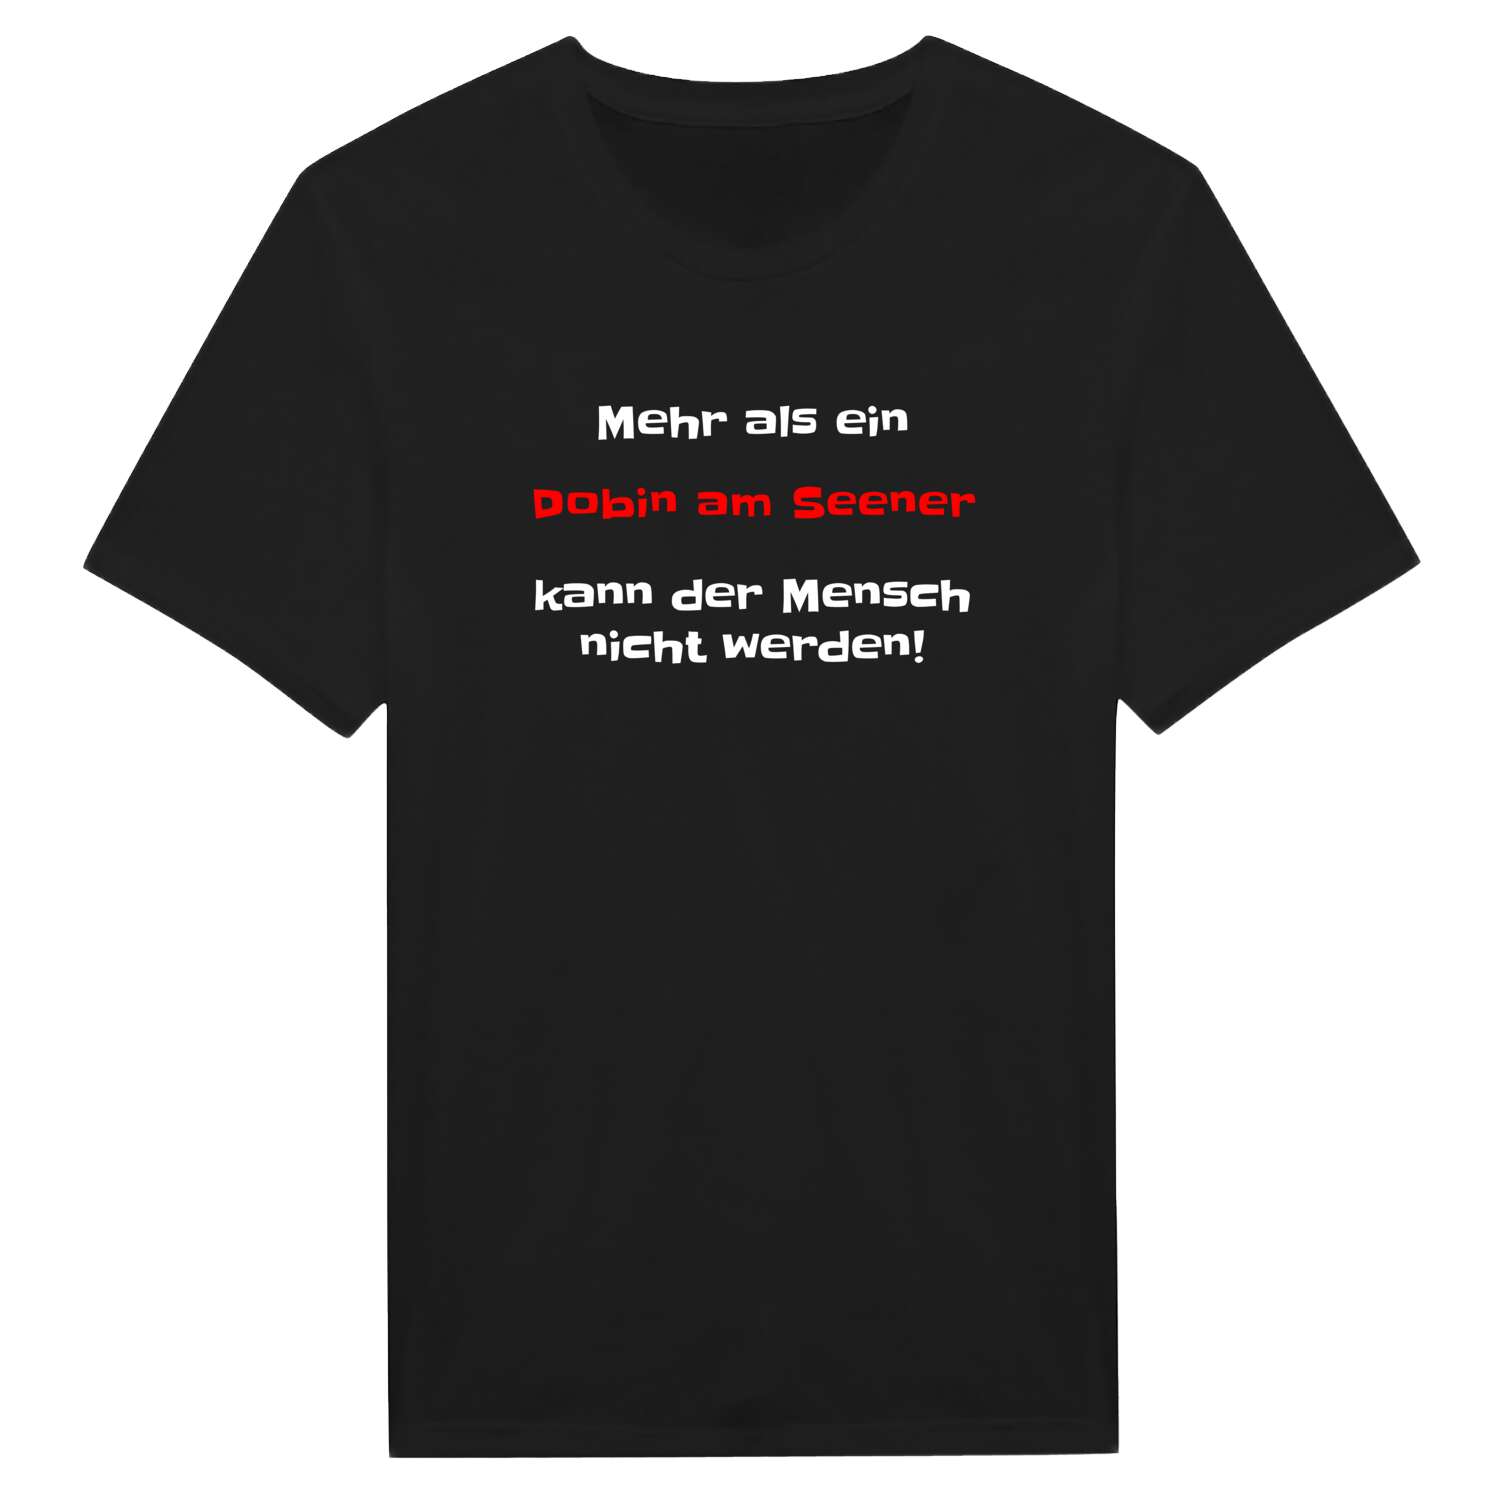 Dobin am See T-Shirt »Mehr als ein«